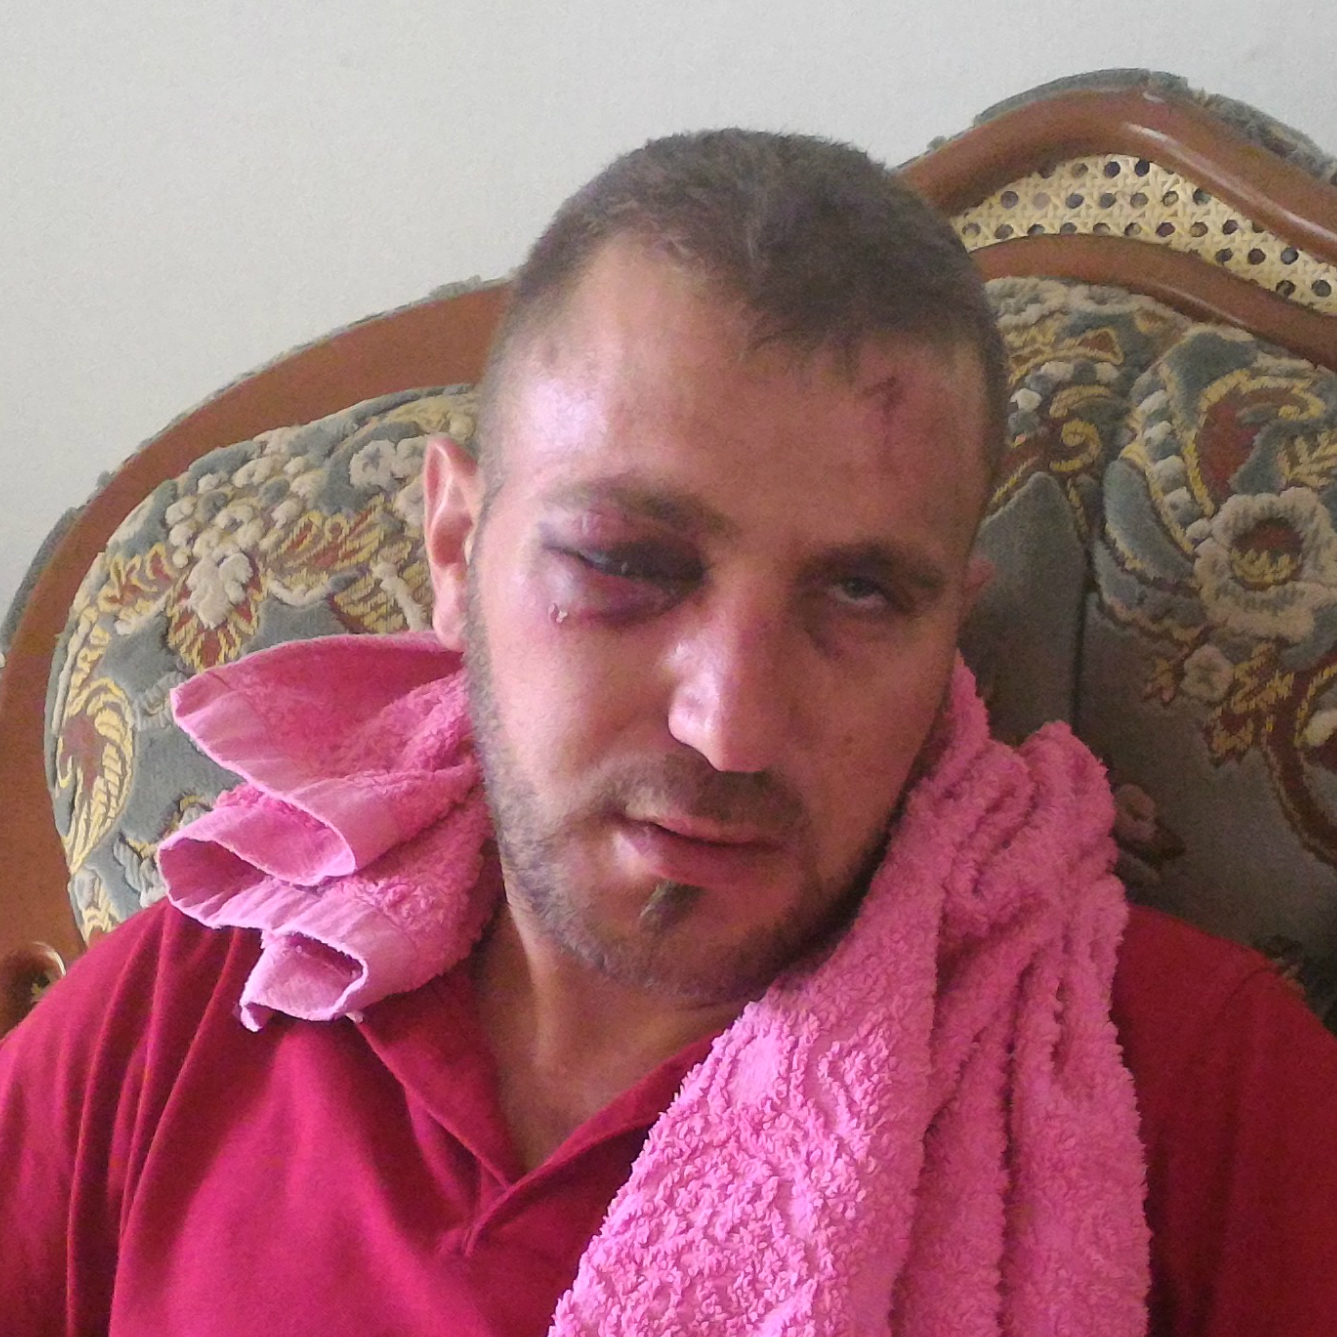 عباس برغوثي الذي أصيب في عينه من ضربات الجنود. تصوير: اياد حداد، بتسيلم. 24.7.17.